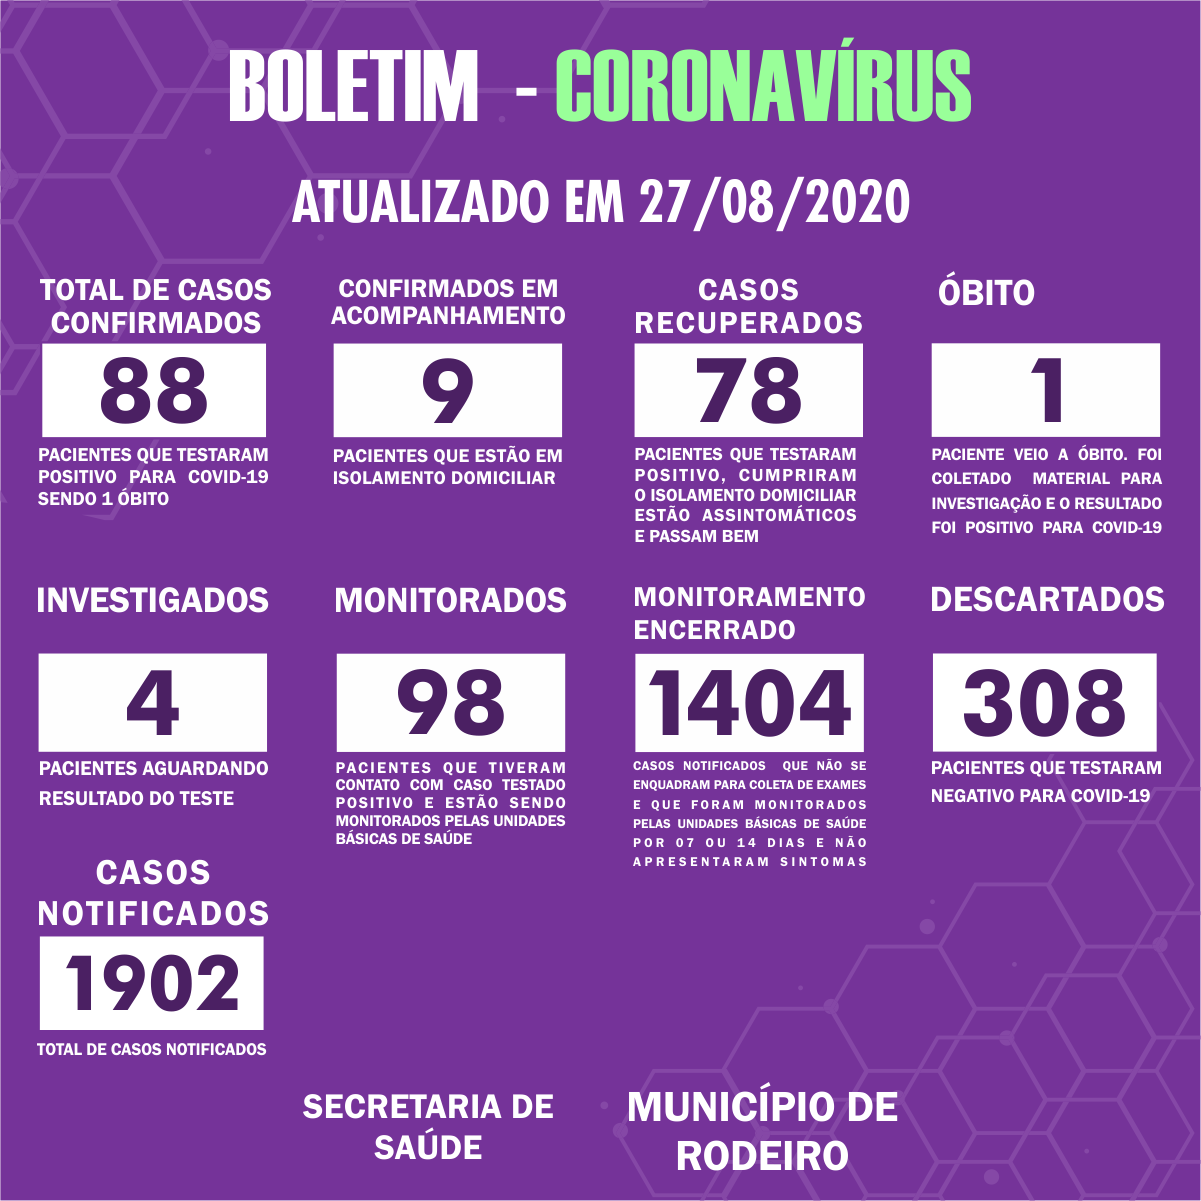 Boletim Epidemiológico do Município de Rodeiro sobre coronavírus, atualizado em 27/08/2020